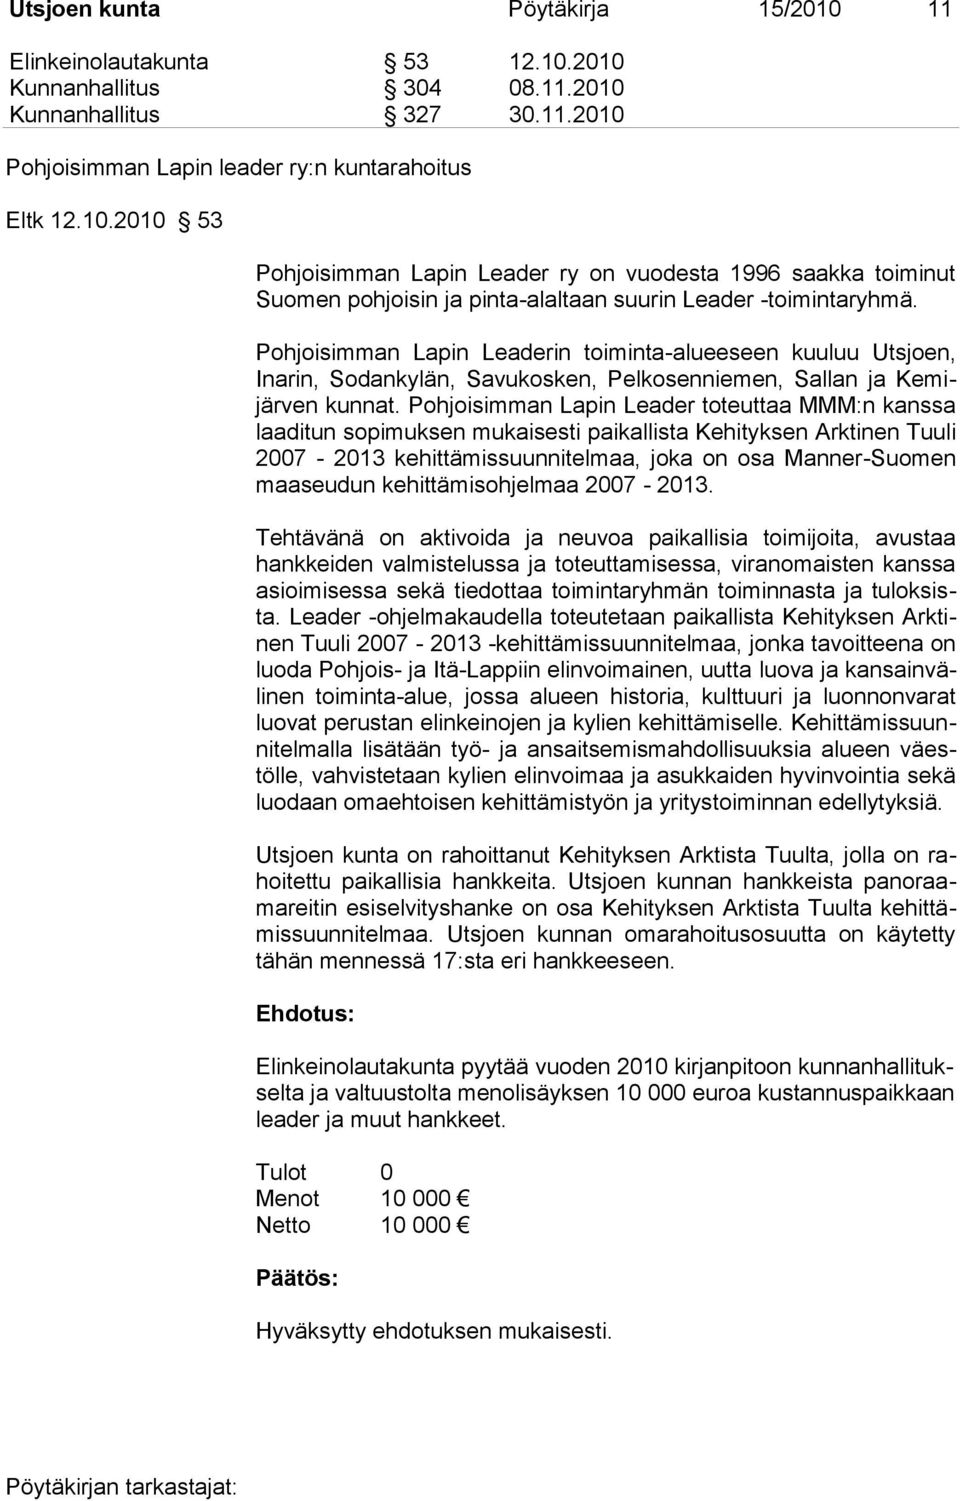 Pohjoisimman Lapin Leader toteuttaa MMM:n kanssa laaditun sopimuksen mukaisesti paikallista Kehityksen Arktinen Tuuli 2007-2013 kehittämissuunnitelmaa, joka on osa Manner-Suomen maaseudun